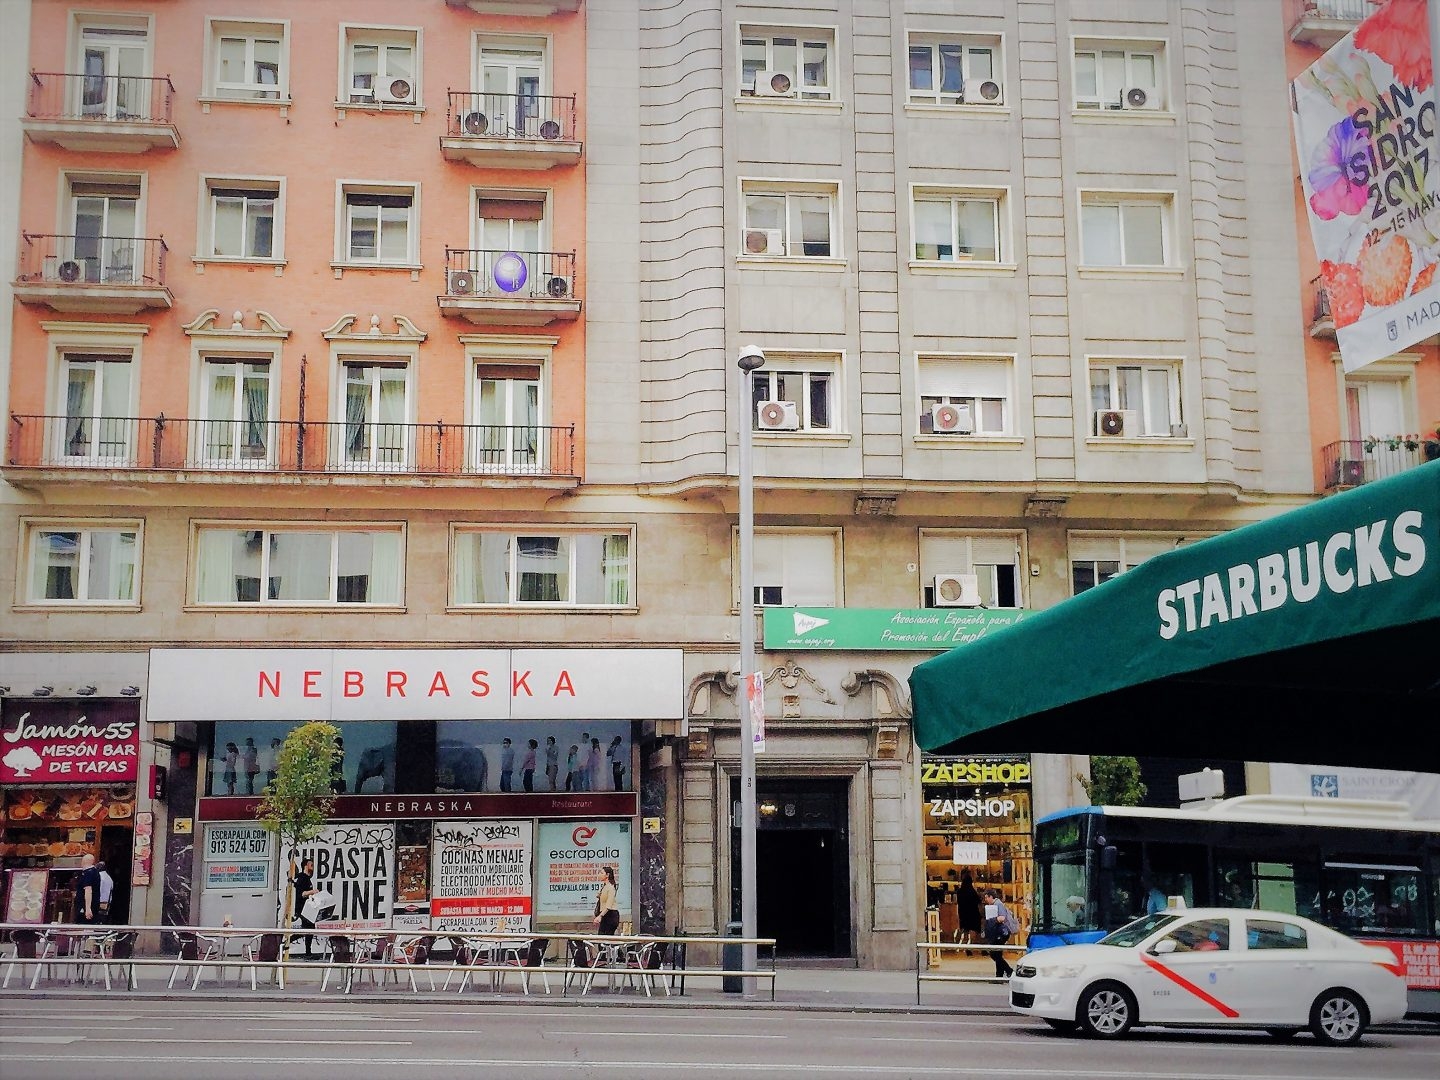 Fachada sellada de la primera cafetería Nebraska en la Gran Vía de Madrid, frente a un local de Starbucks.